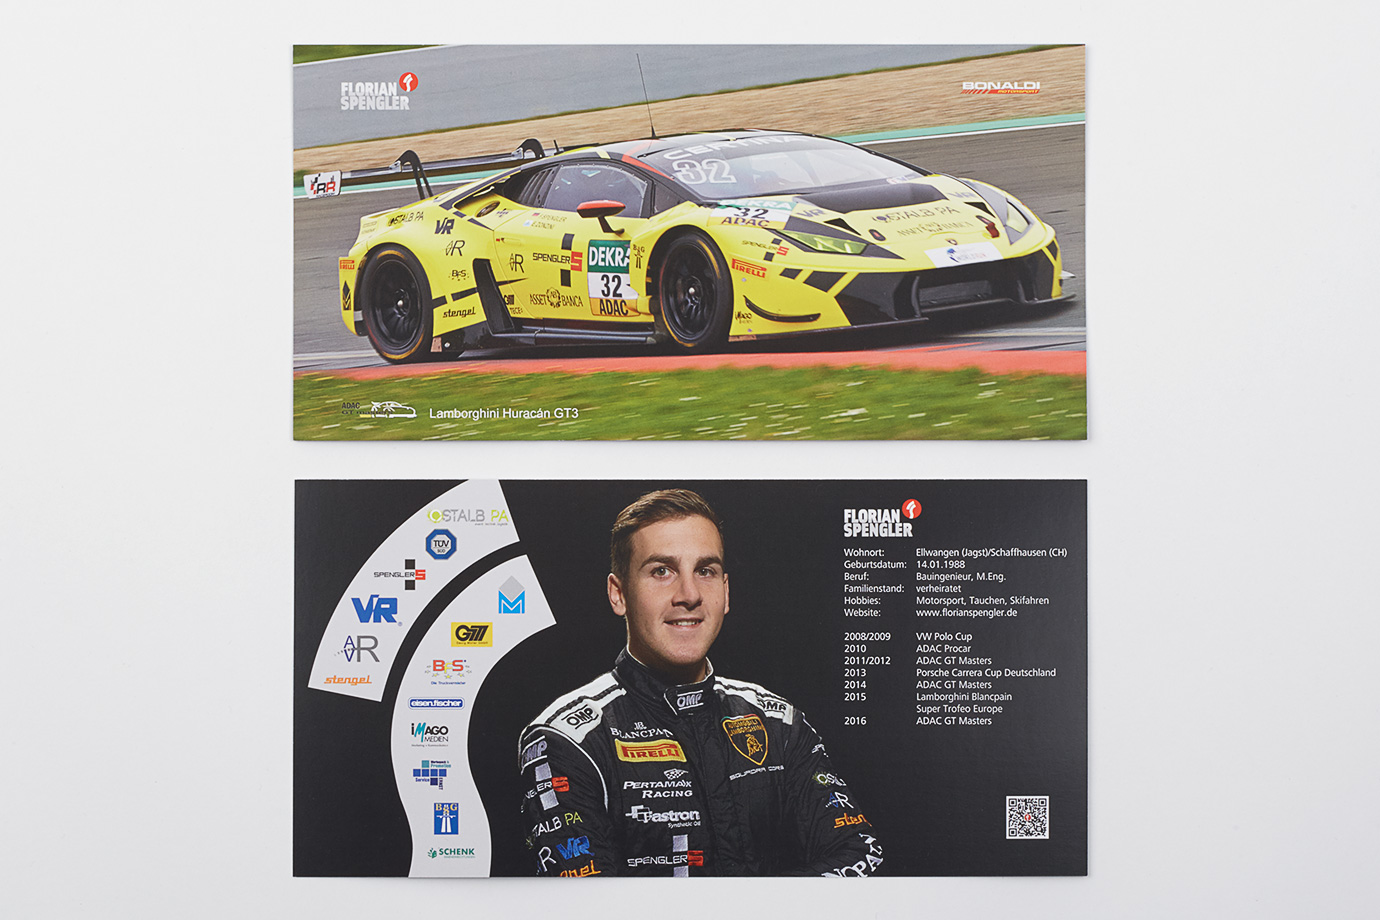 Vorder- und Rückseite der Autogrammkarte des Rennfahrers Florian Spengler